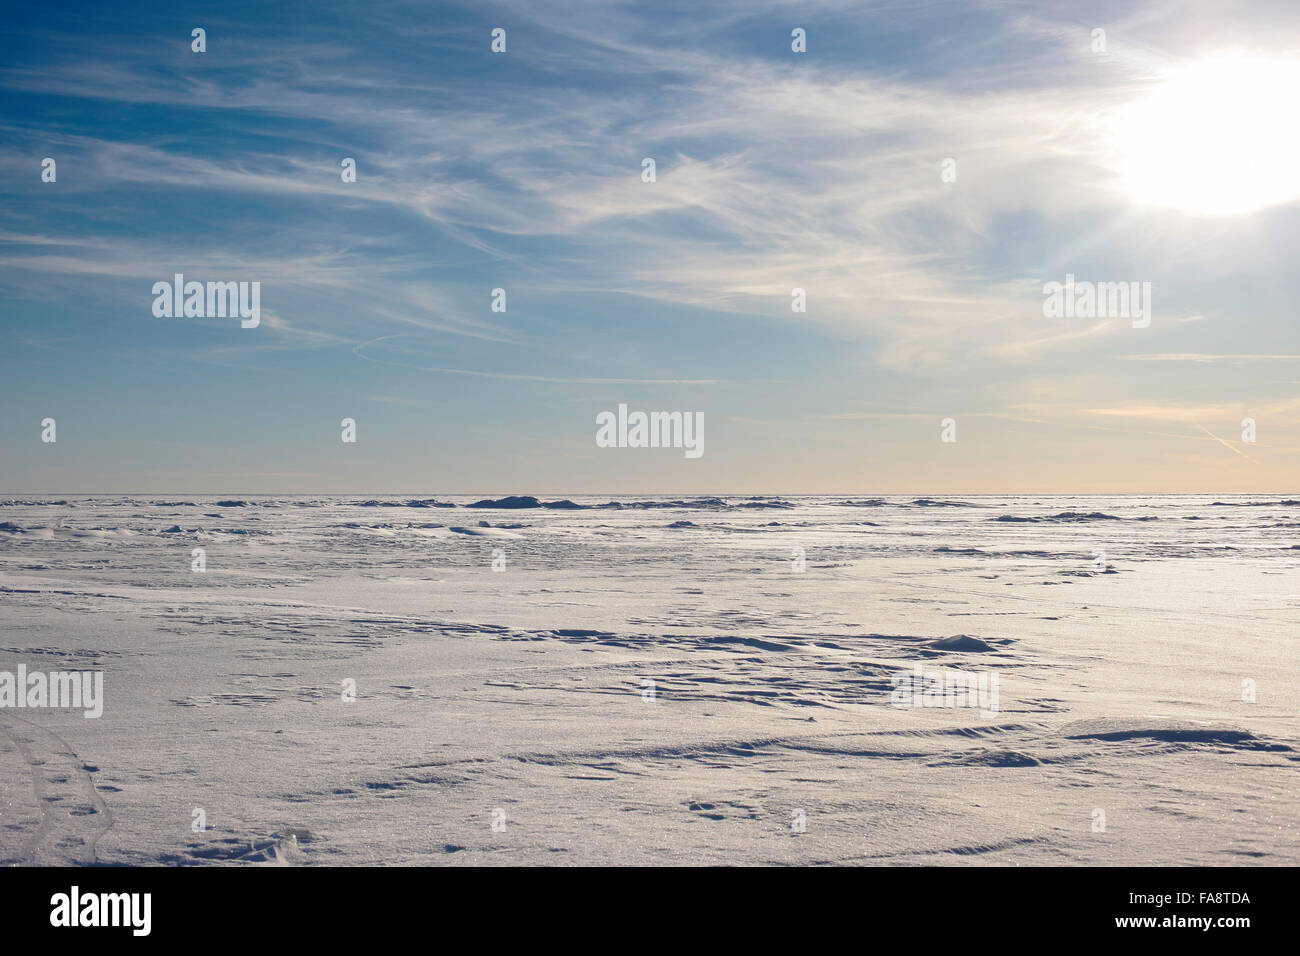 Abstract paesaggio artico. neve in pianura e cielo Foto Stock